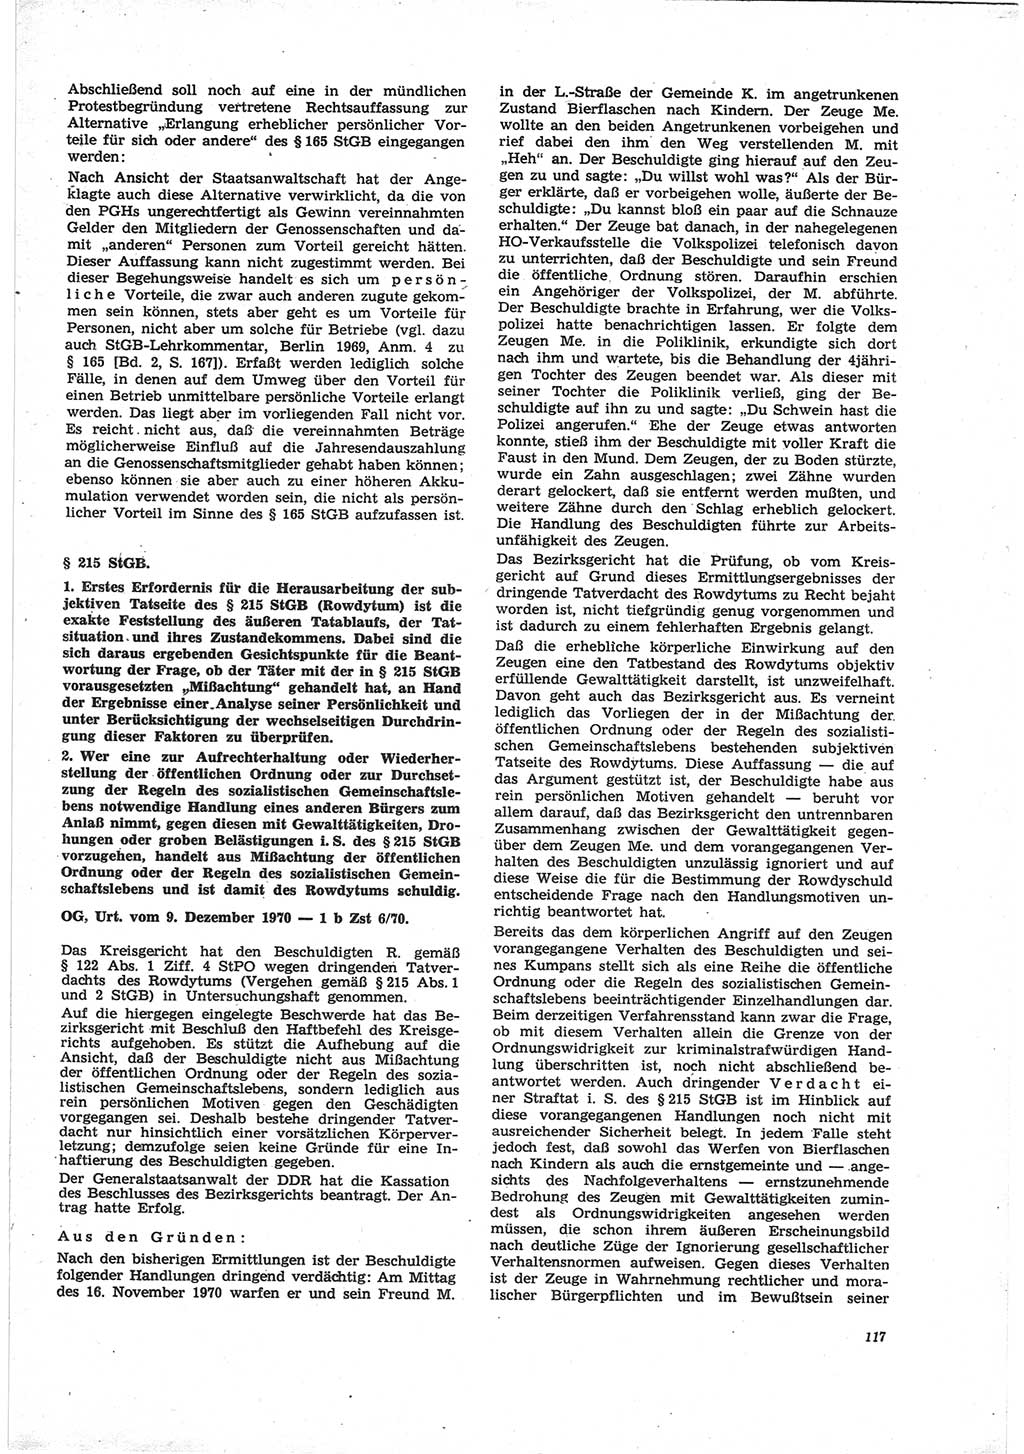 Neue Justiz (NJ), Zeitschrift für Recht und Rechtswissenschaft [Deutsche Demokratische Republik (DDR)], 25. Jahrgang 1971, Seite 117 (NJ DDR 1971, S. 117)